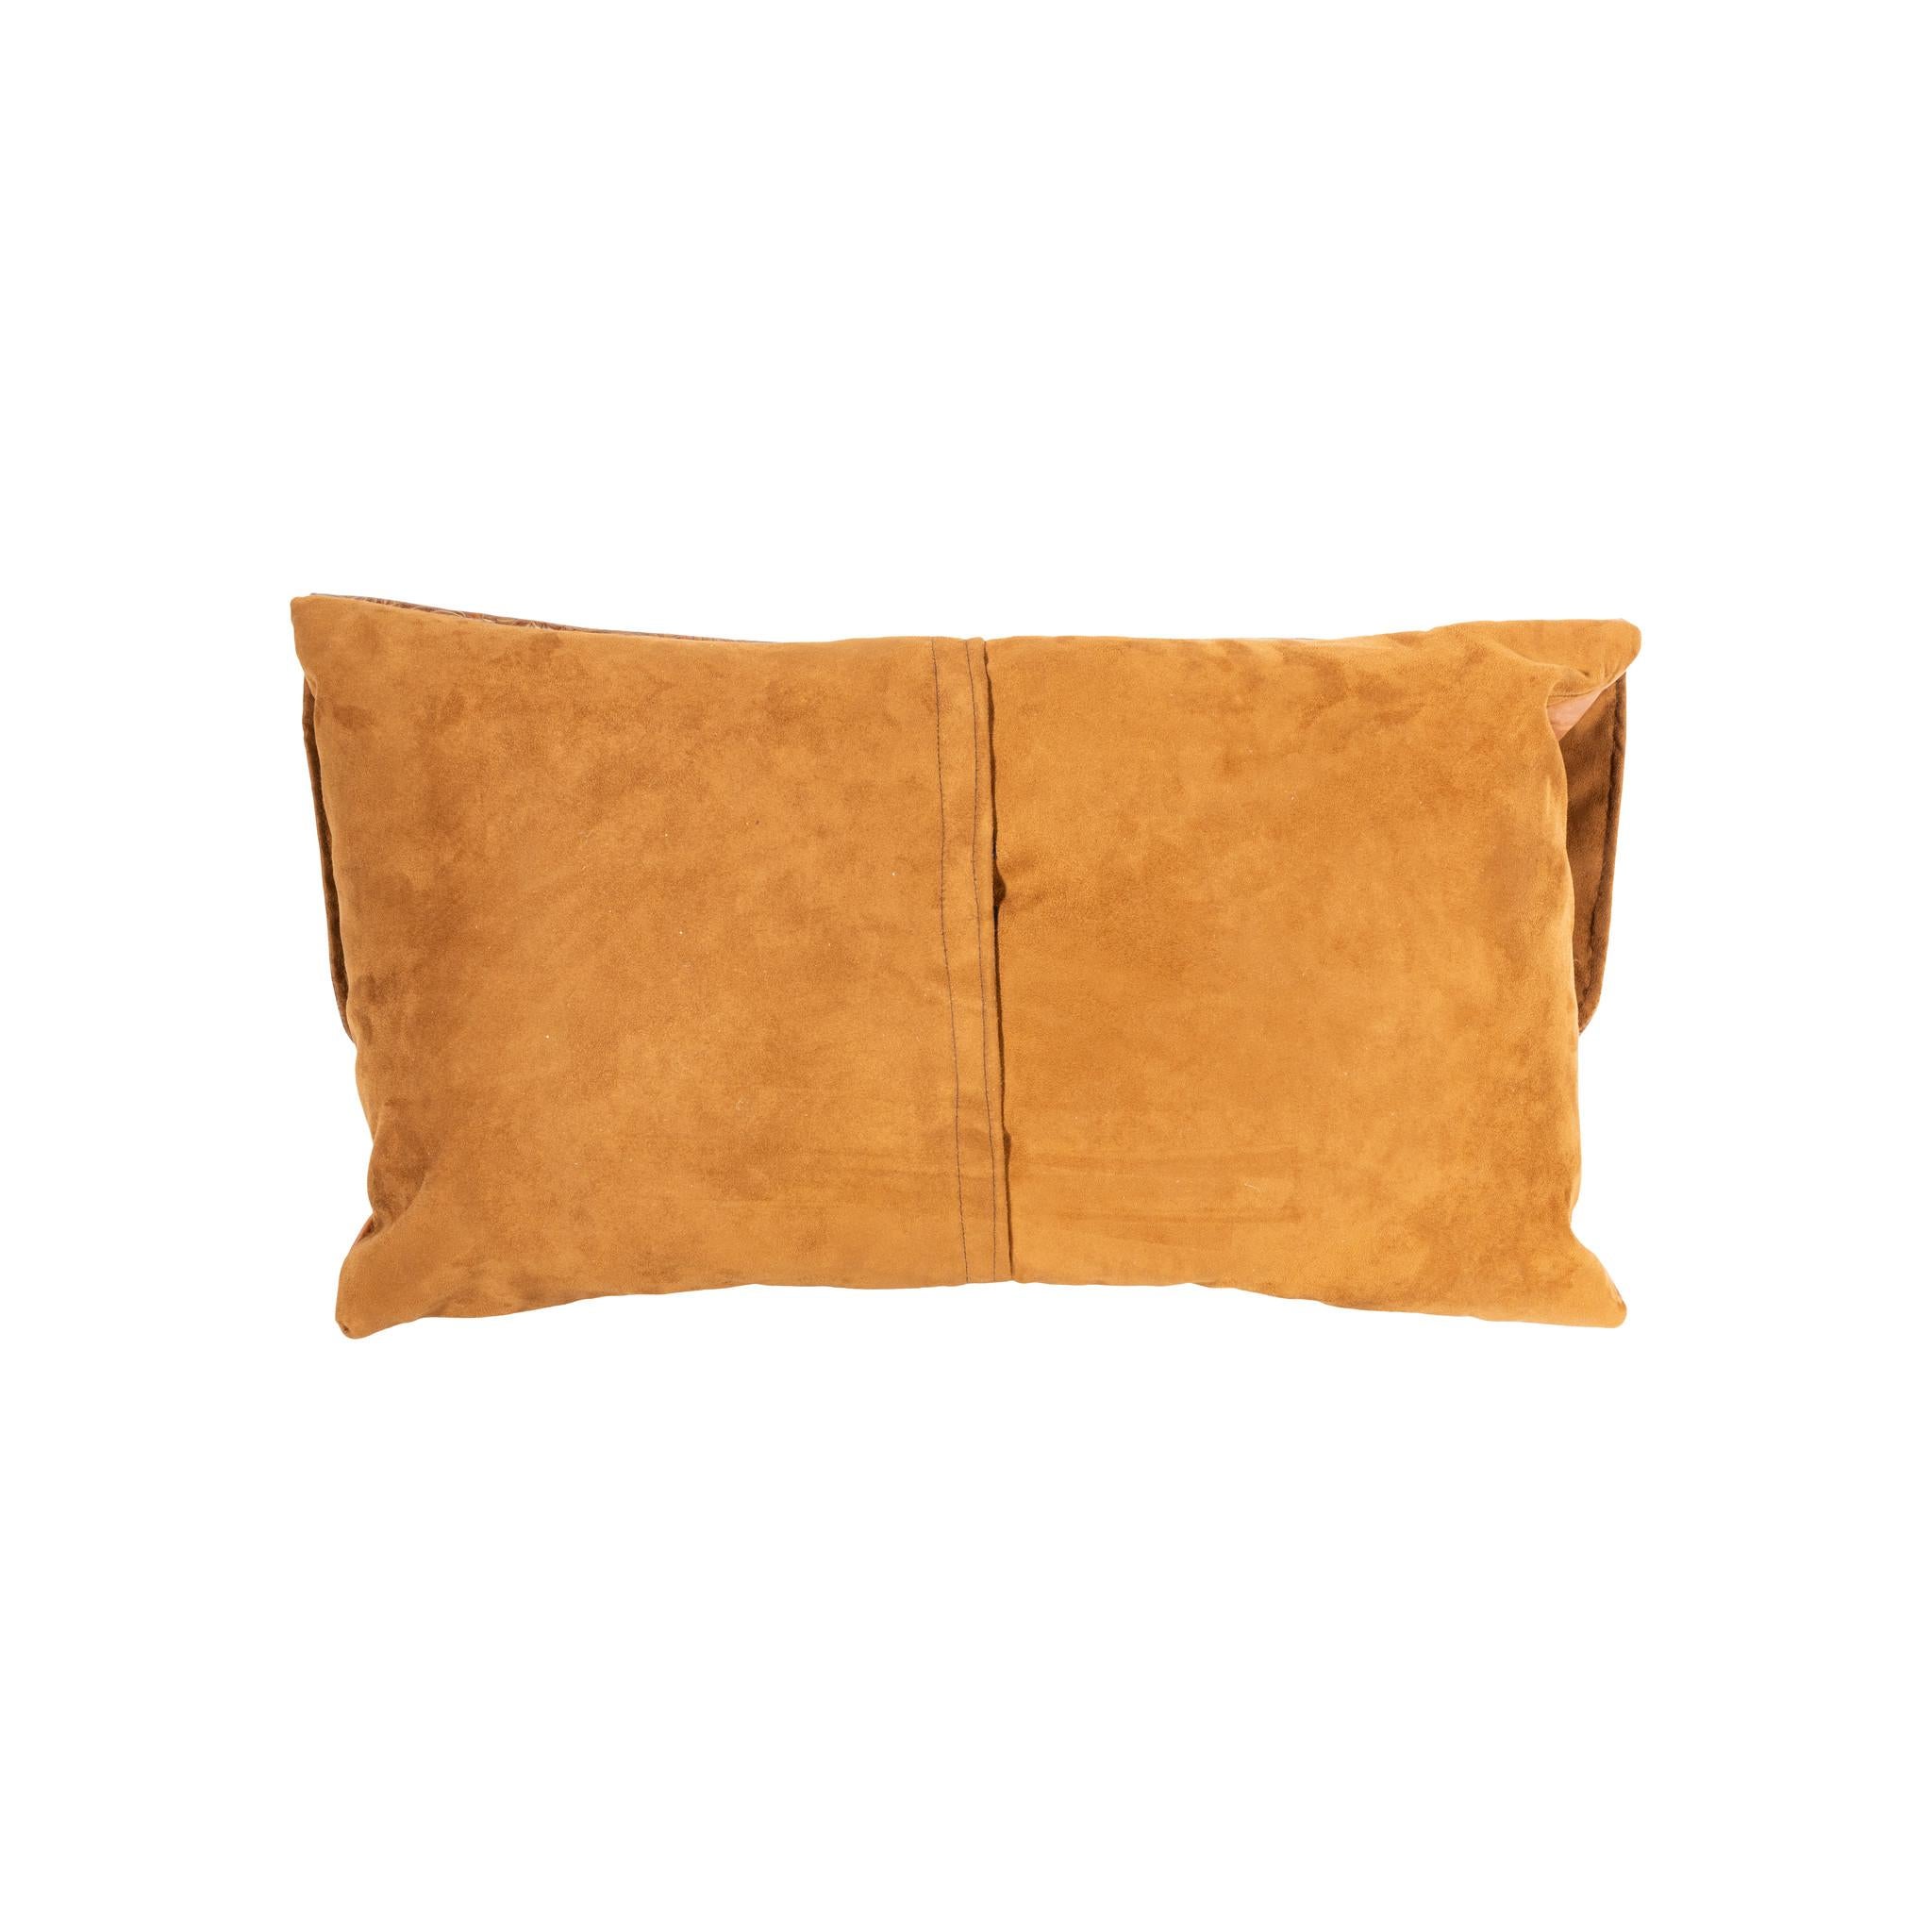 custom leather pillows